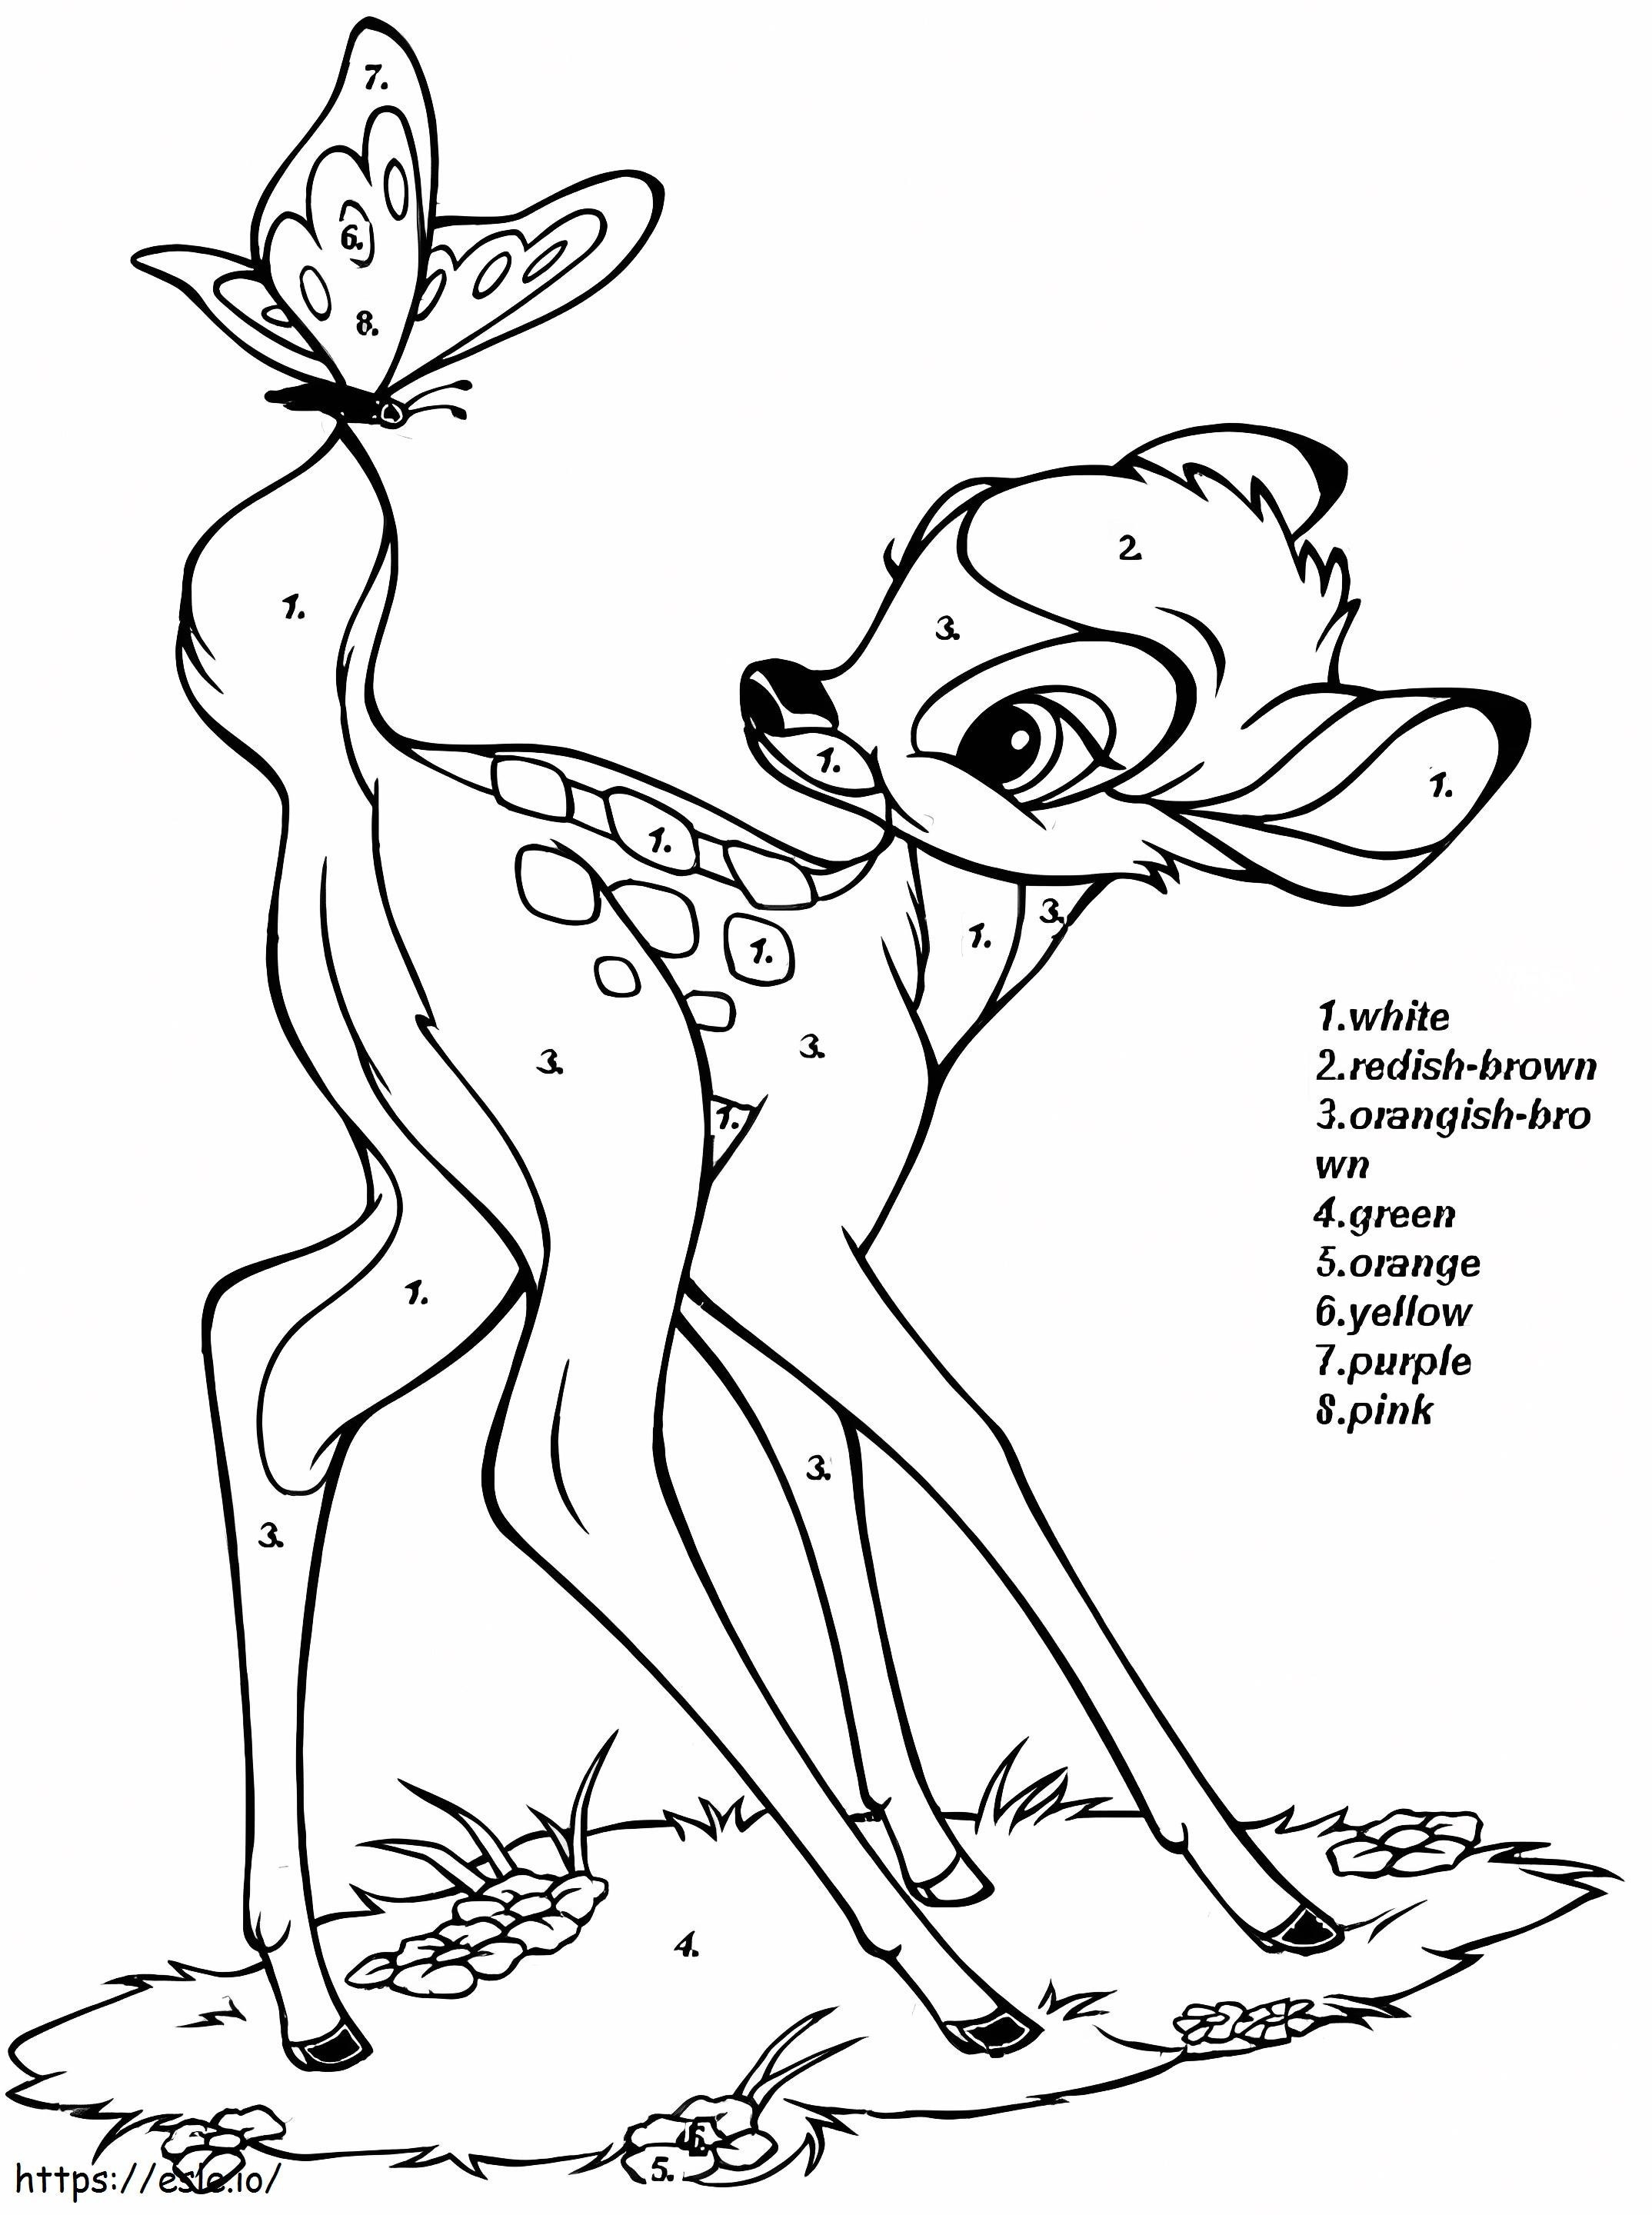 Colorear por Números a Bambi para colorear